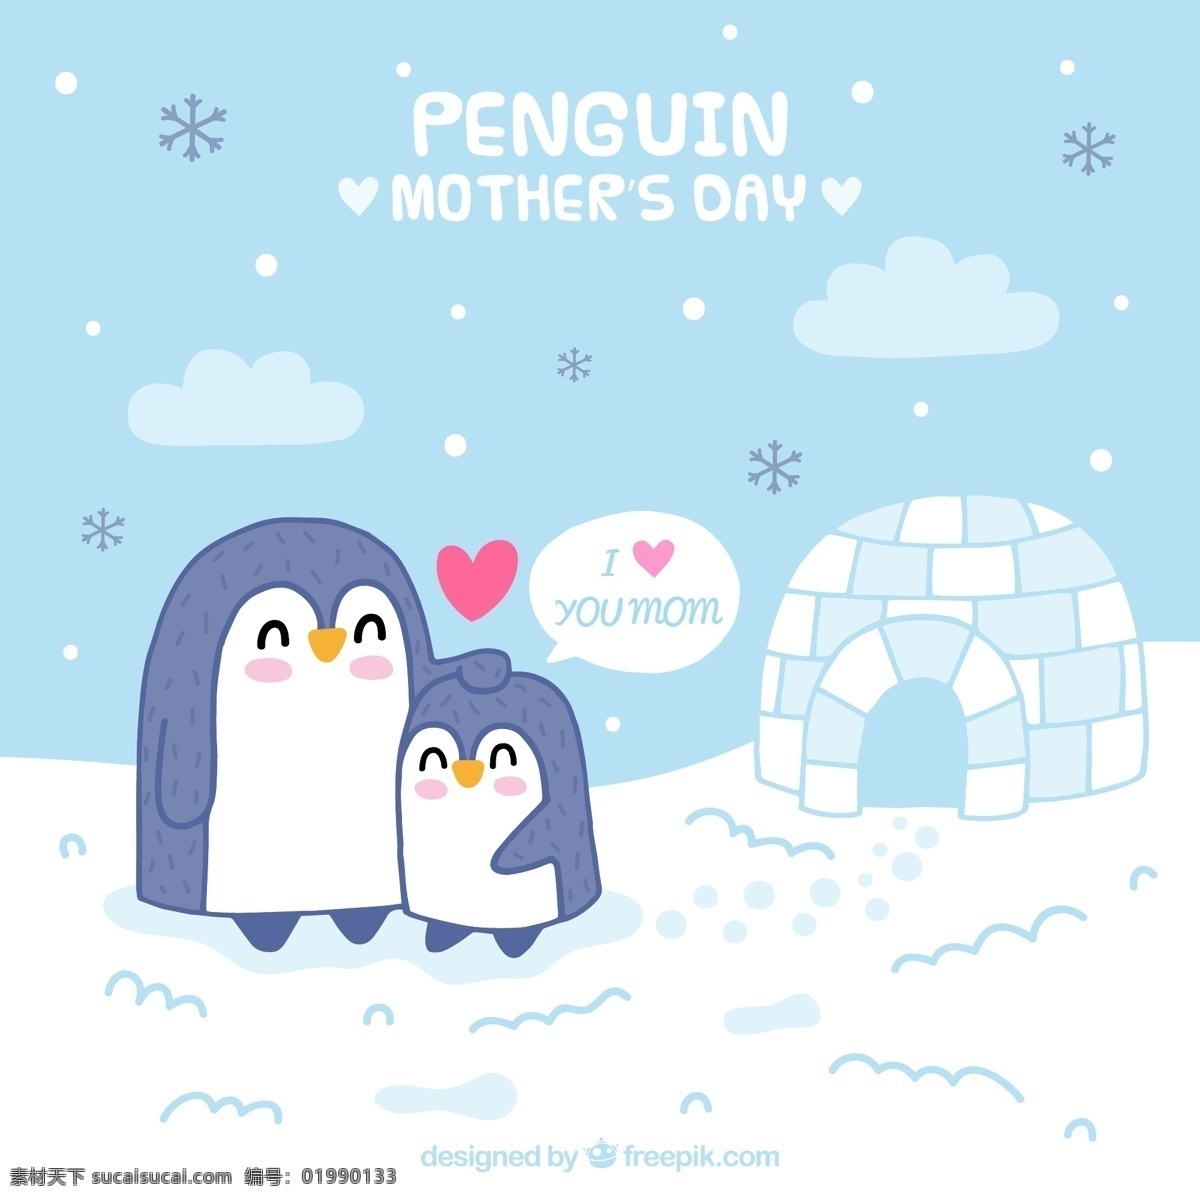 可爱 母亲节 企鹅 矢量 雪花 爱心 冰屋子 雪地 动物 mothers day 矢量图